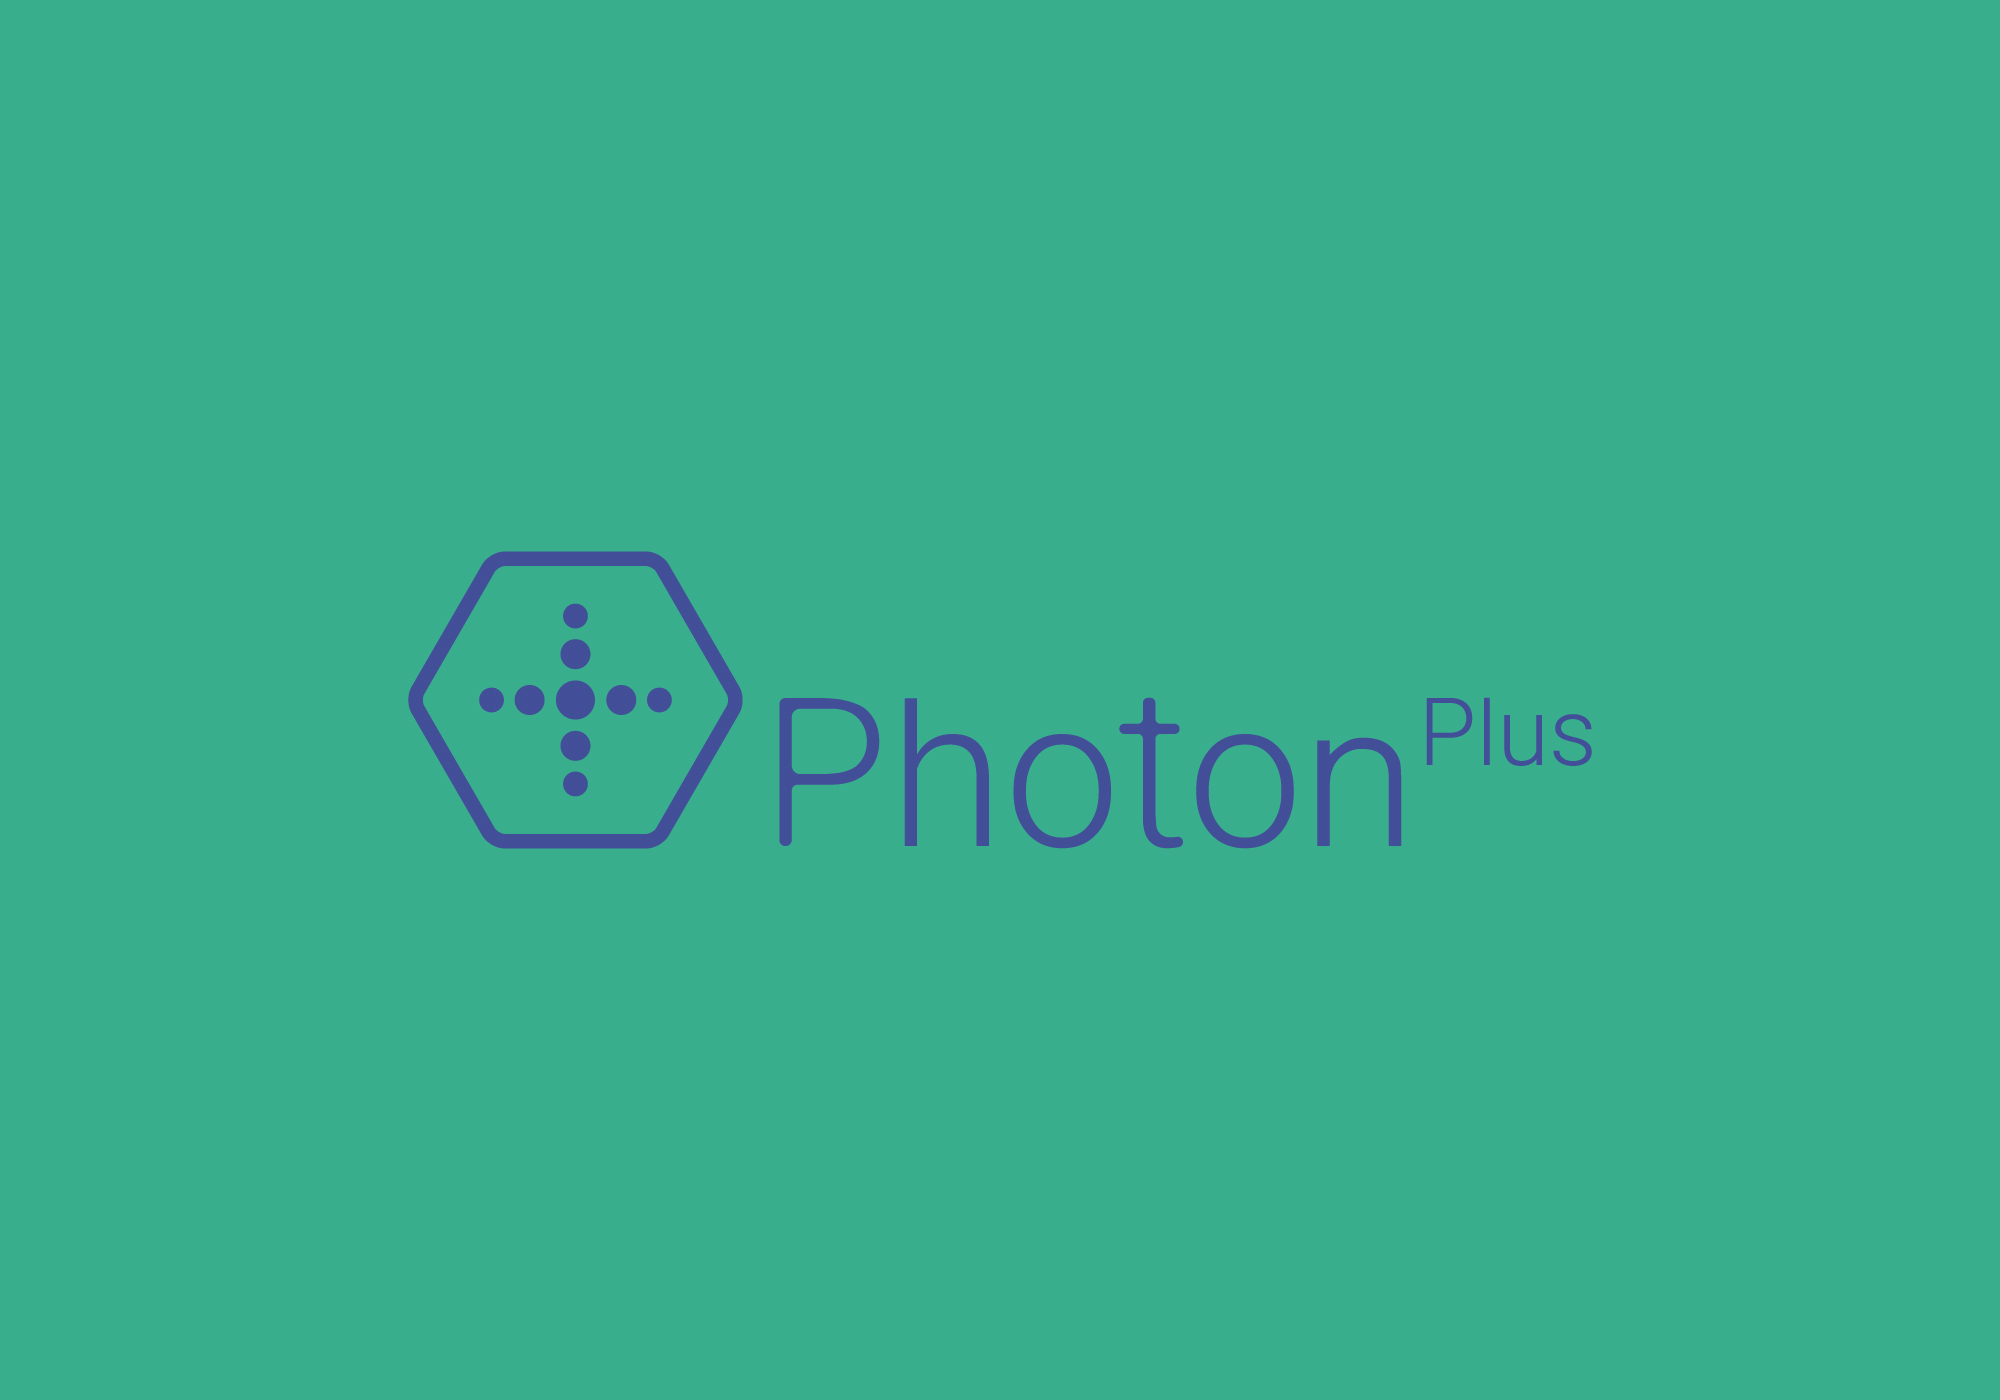 photonplus-08